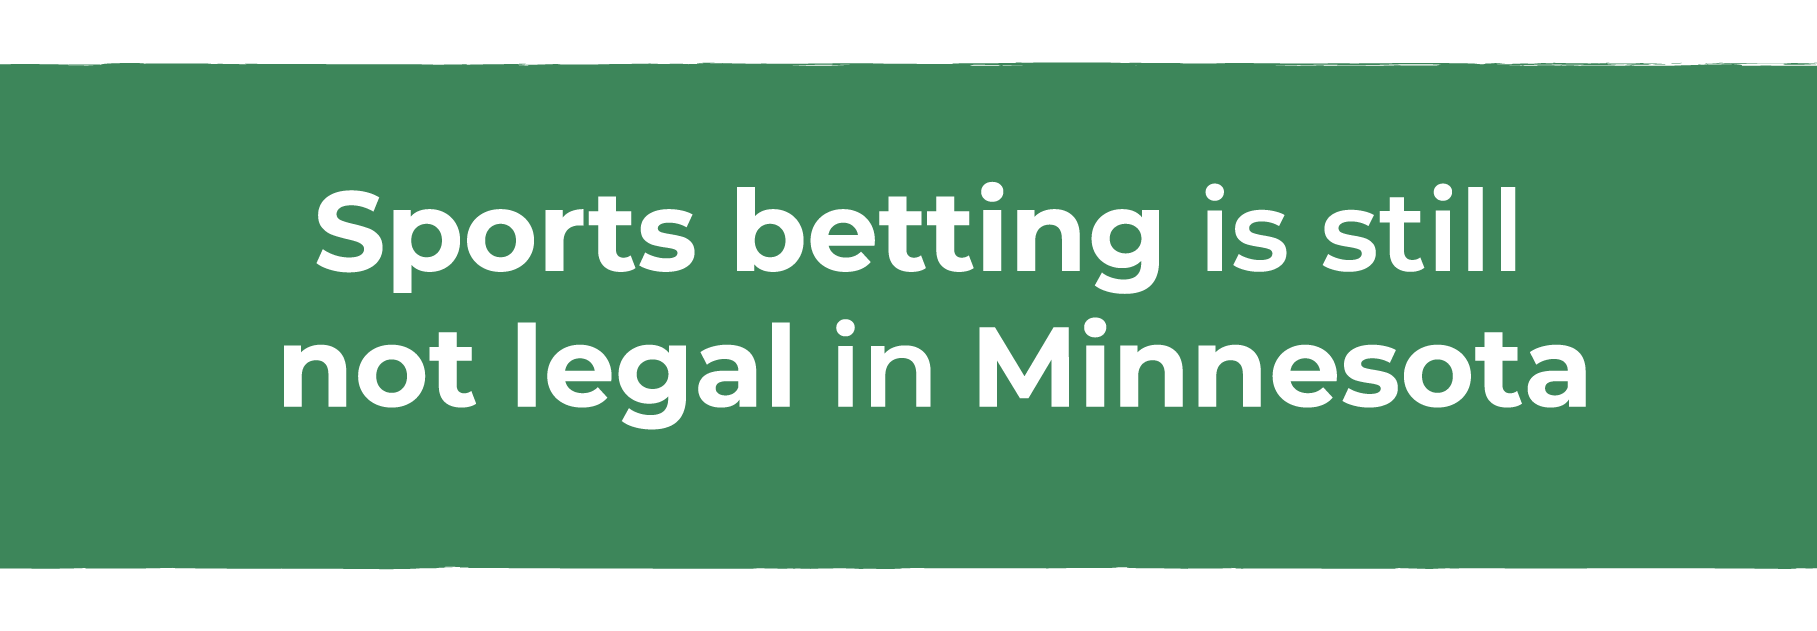 Sports betting is still not legal in Minnesota